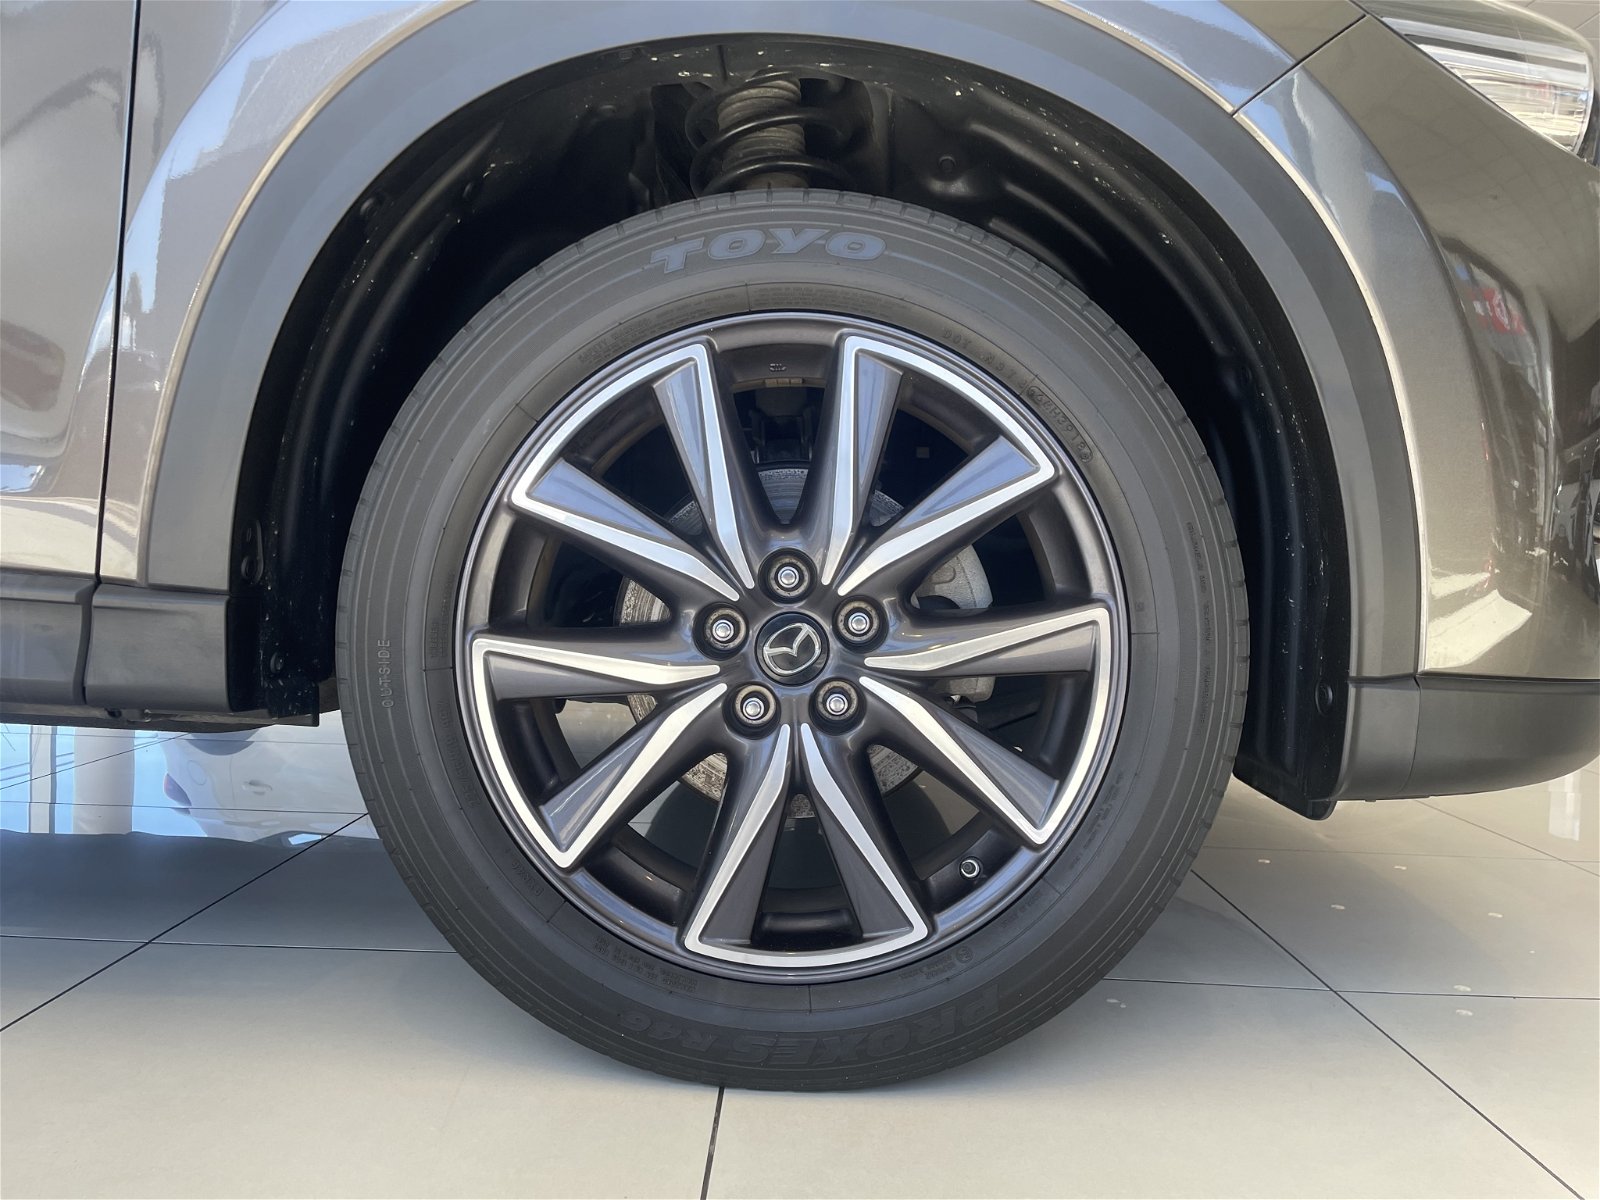 2018 Mazda CX-5 Ltd Ptr 2.5P/4WD/6At